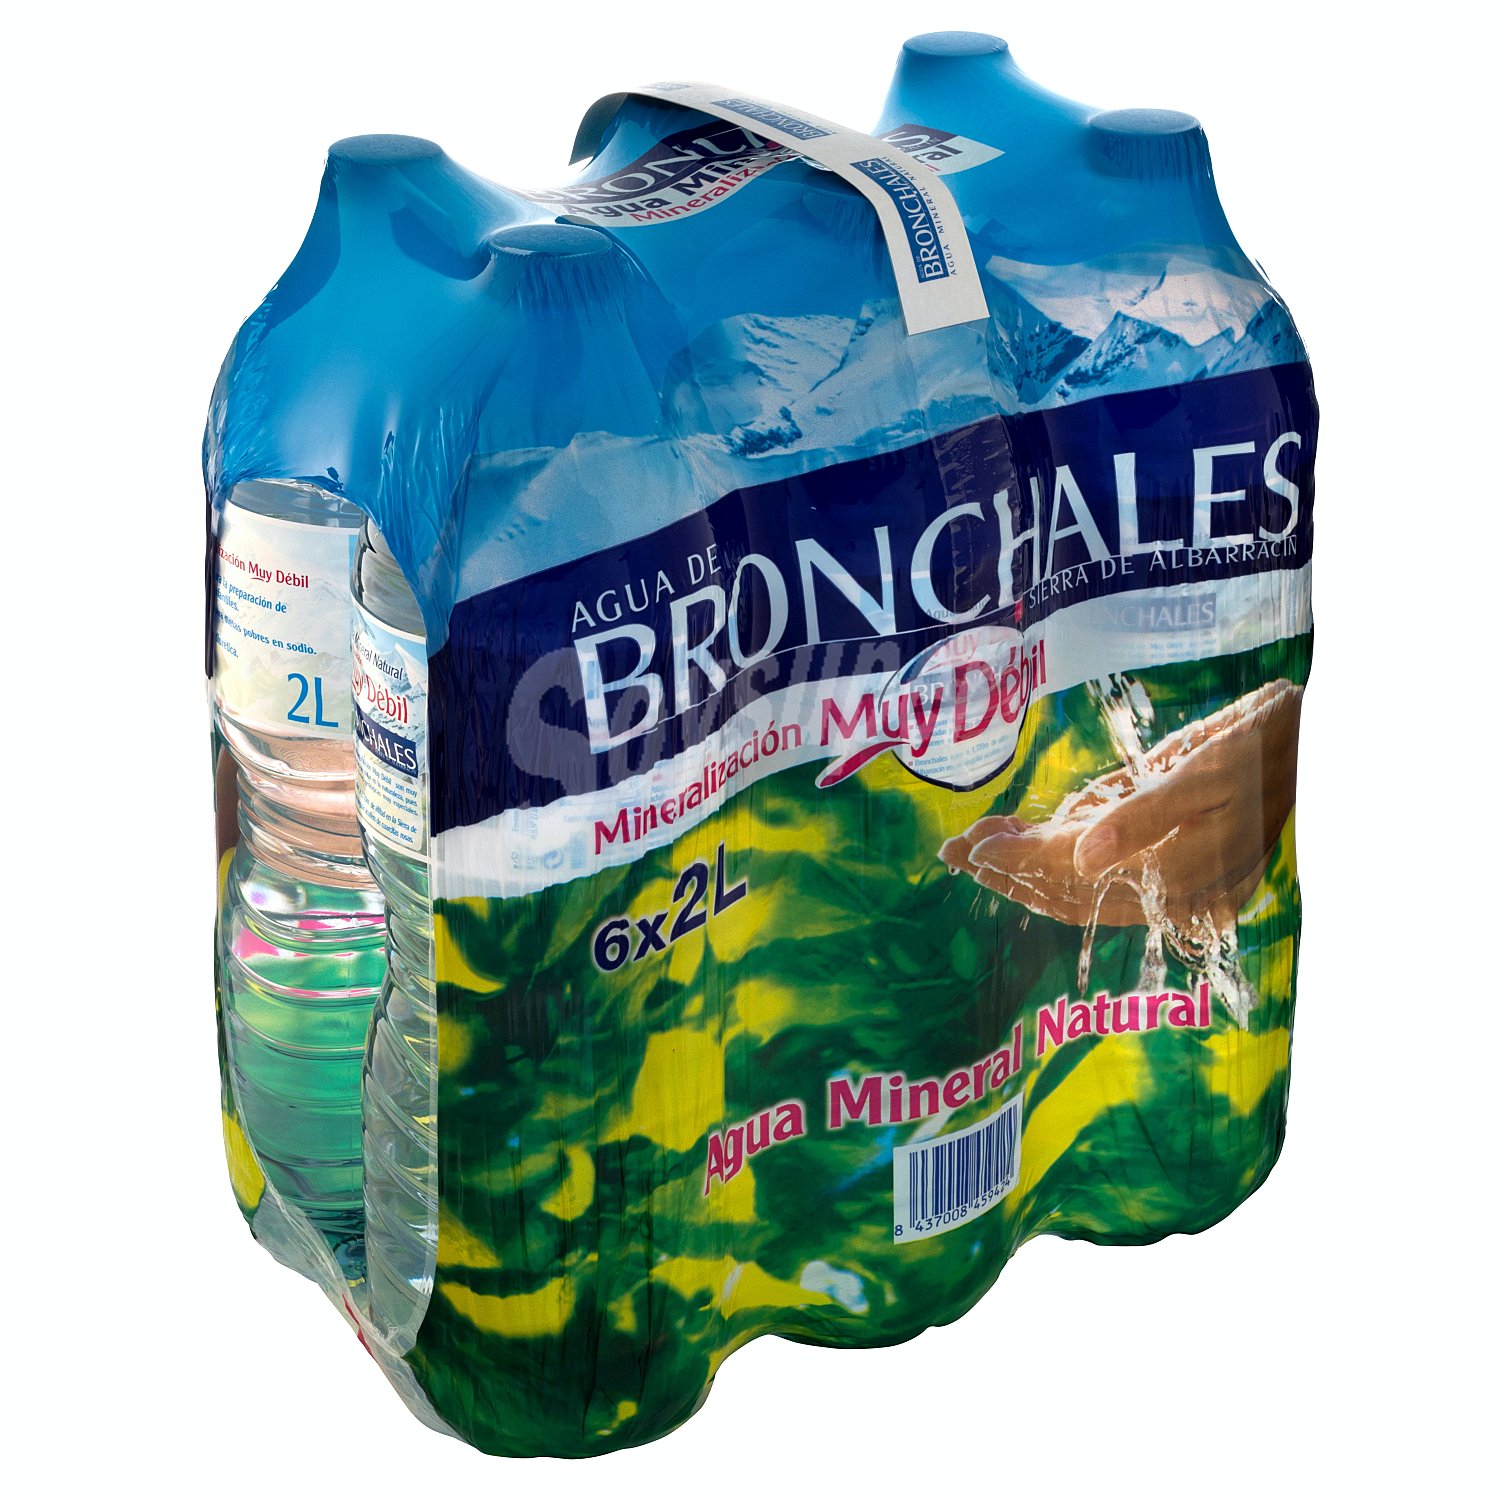 Encuentra el precio del agua en Bronchales: Todas las tarifas y detalles actualizados